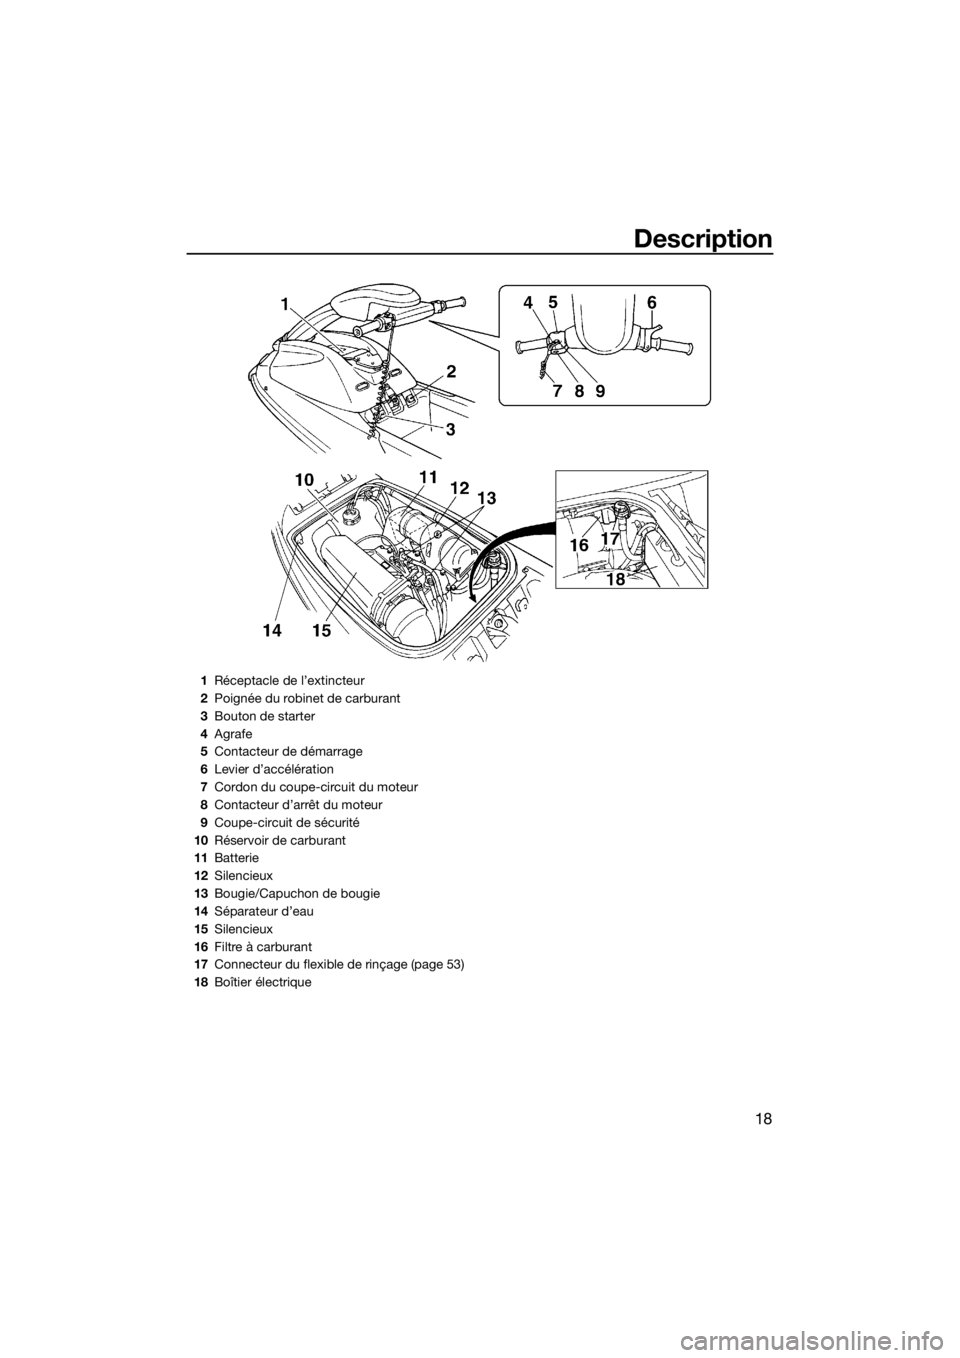 YAMAHA SUPERJET 2019  Notices Demploi (in French) Description
18
1Réceptacle de l’extincteur
2Poignée du robinet de carburant
3Bouton de starter
4Agrafe
5Contacteur de démarrage
6Levier d’accélération
7Cordon du coupe-circuit du moteur
8Cont